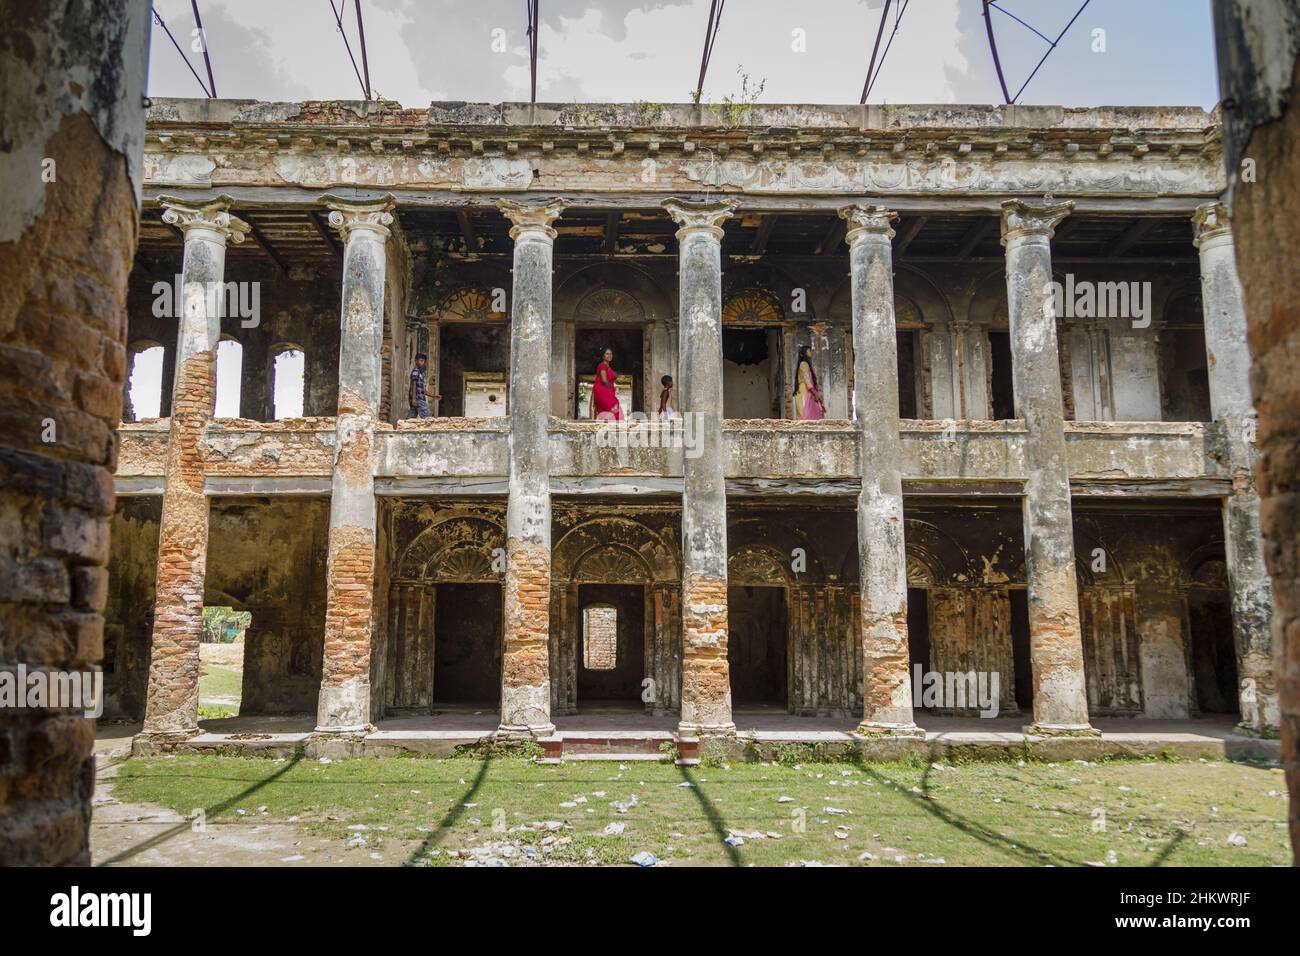 Una joven familia caminando por las ruinas del Palacio de Teota Zamindar en el distrito de Manikganj. El palacio, que se cree que tiene unos 300 años, tenía más de 50 habitaciones originalmente. Foto de stock